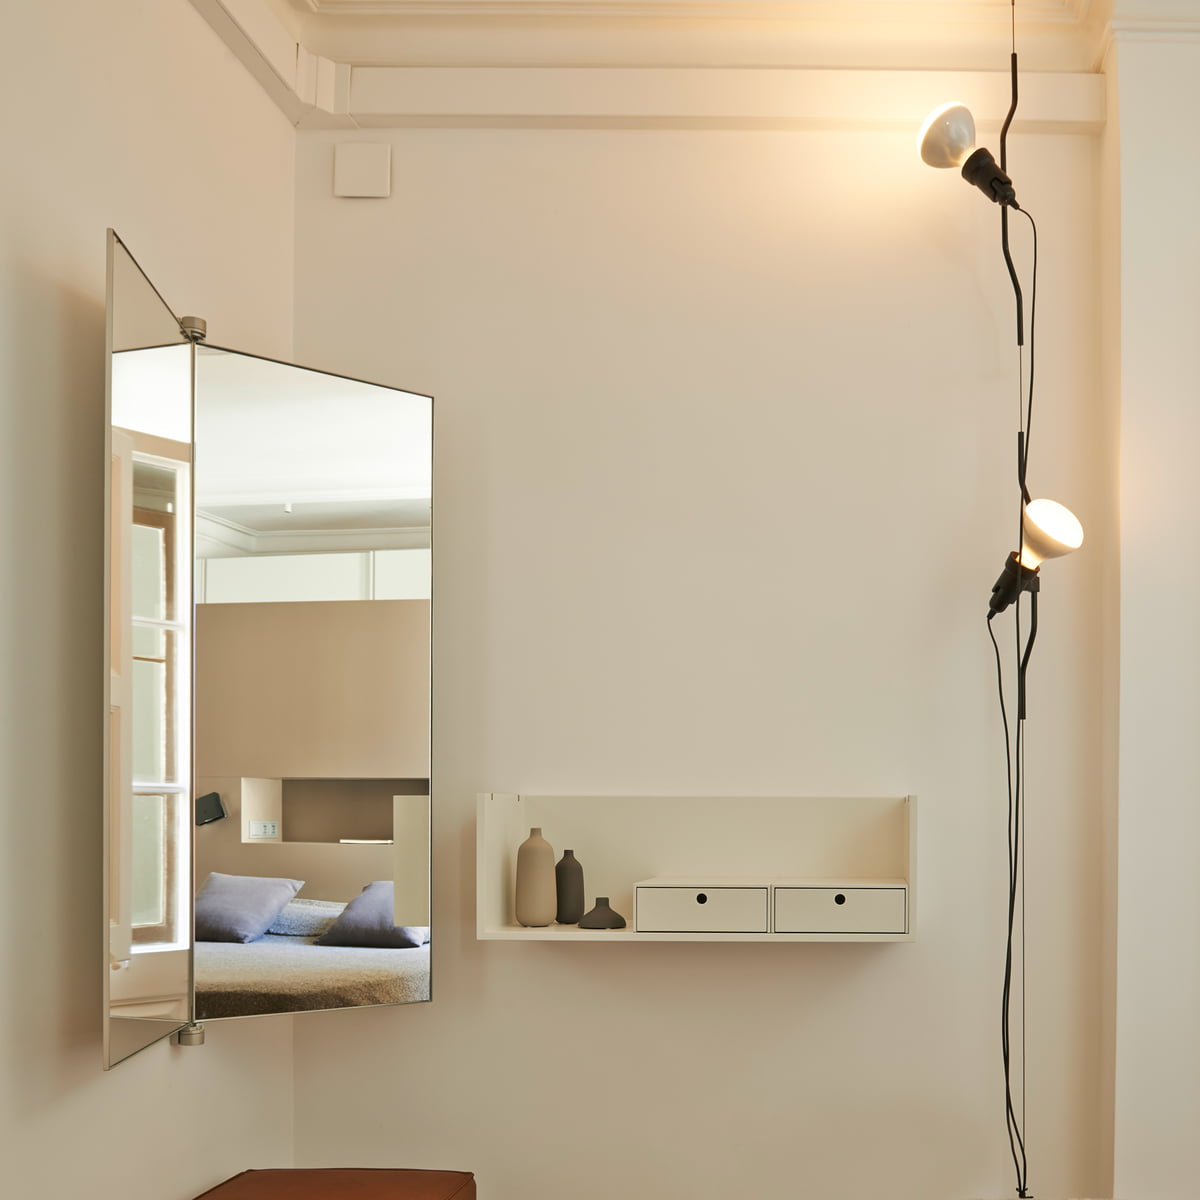 Lampadaire entonnoir design plafonnier projecteur salon salle à